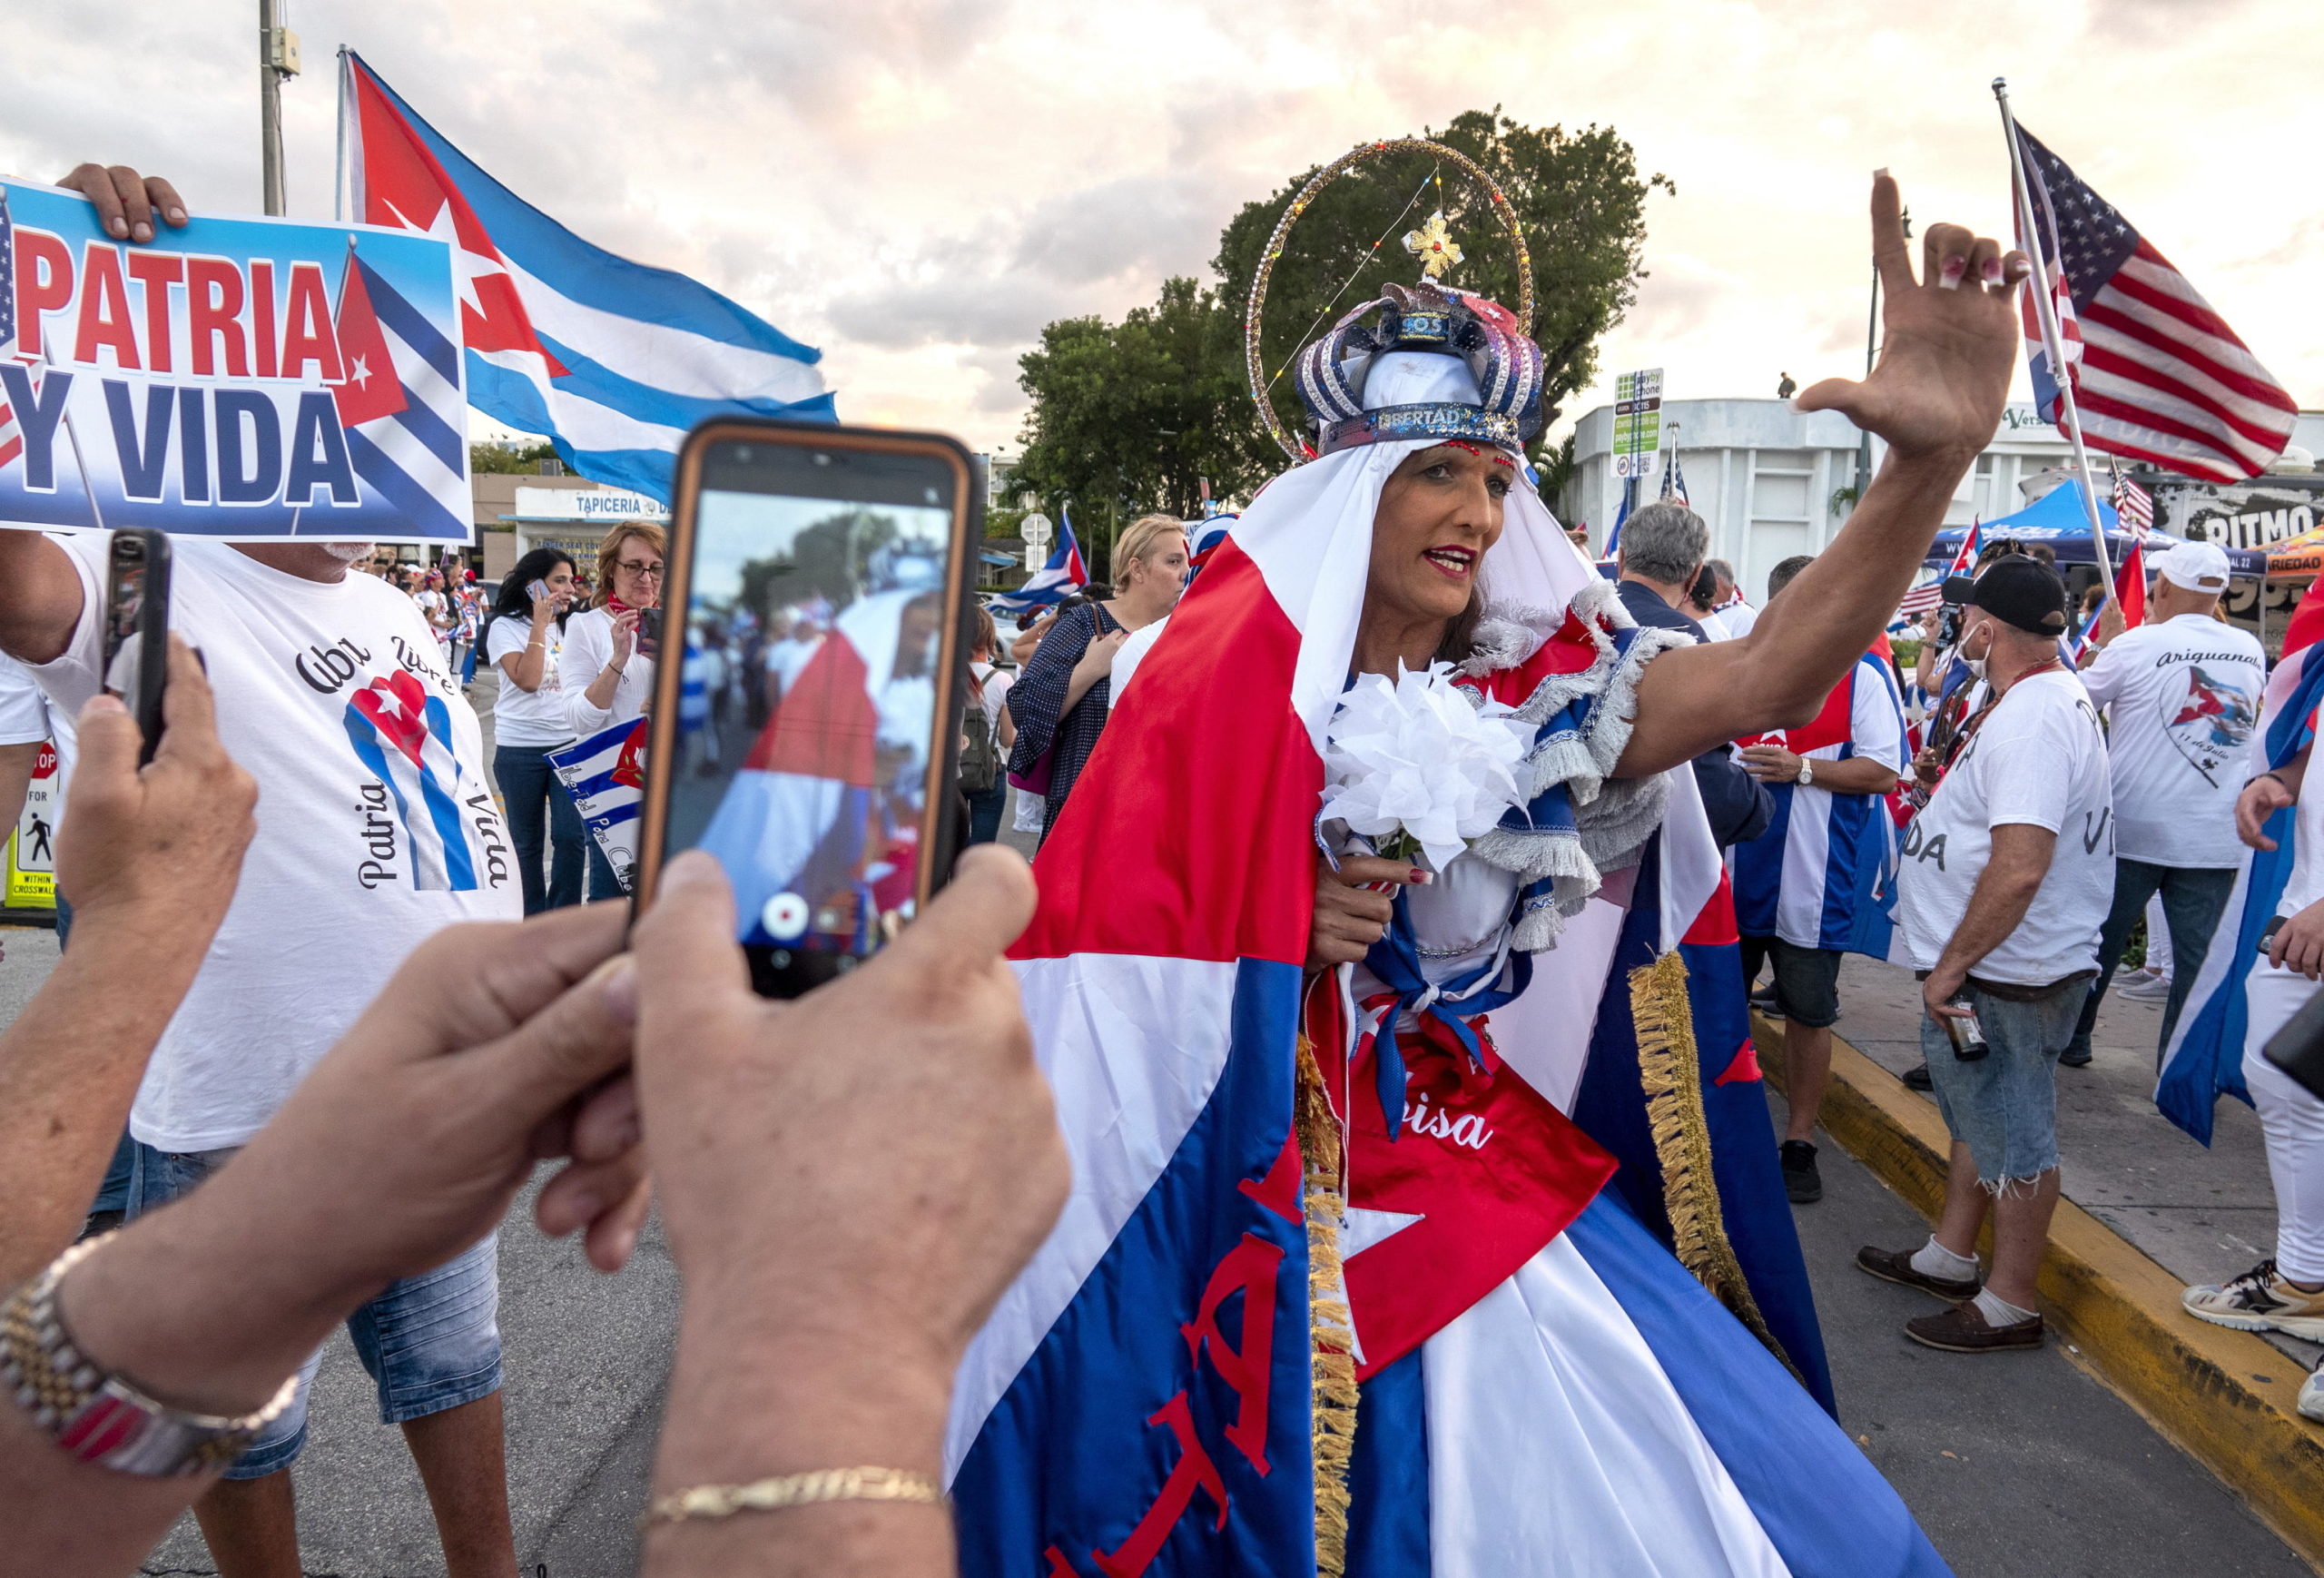 Una donna mascherata sostiene la protesta del popolo cubano contro il governo di Cuba a Miami, in Florida